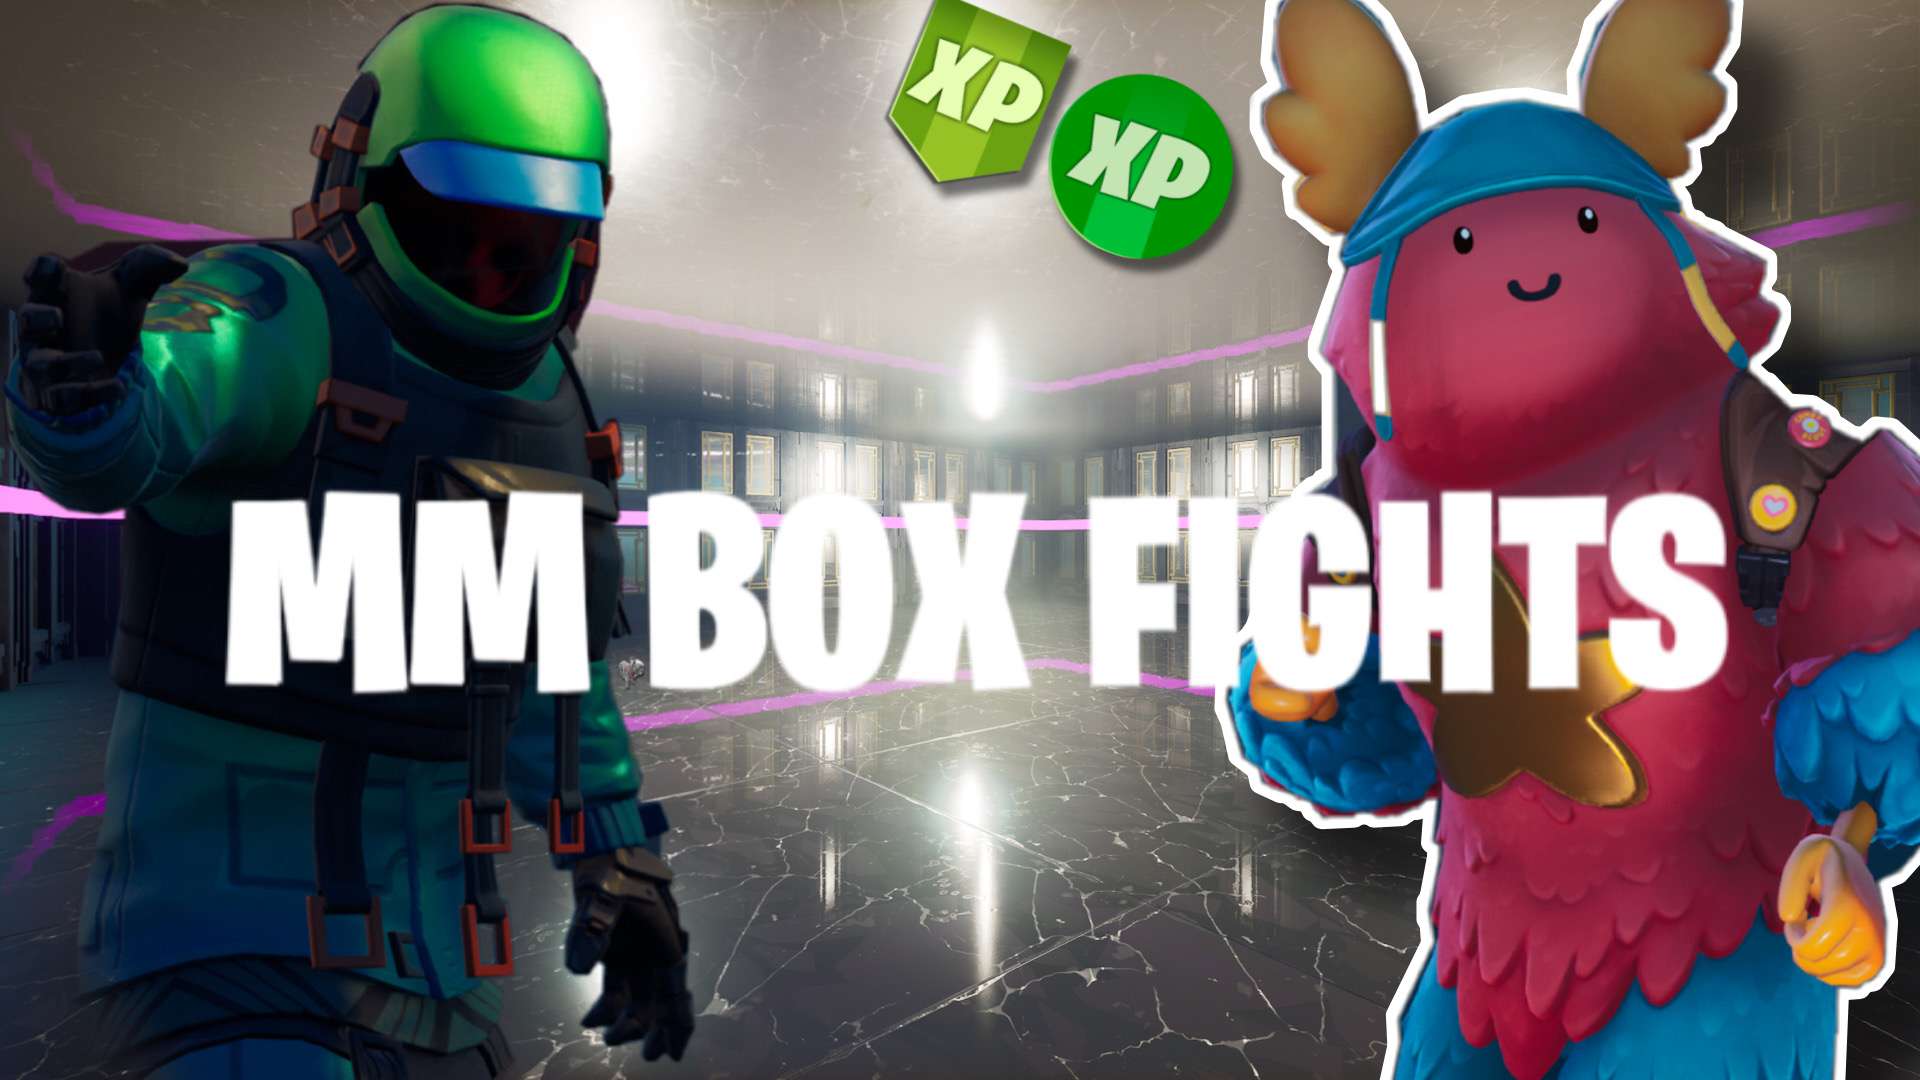 MM BOX FIGHTS